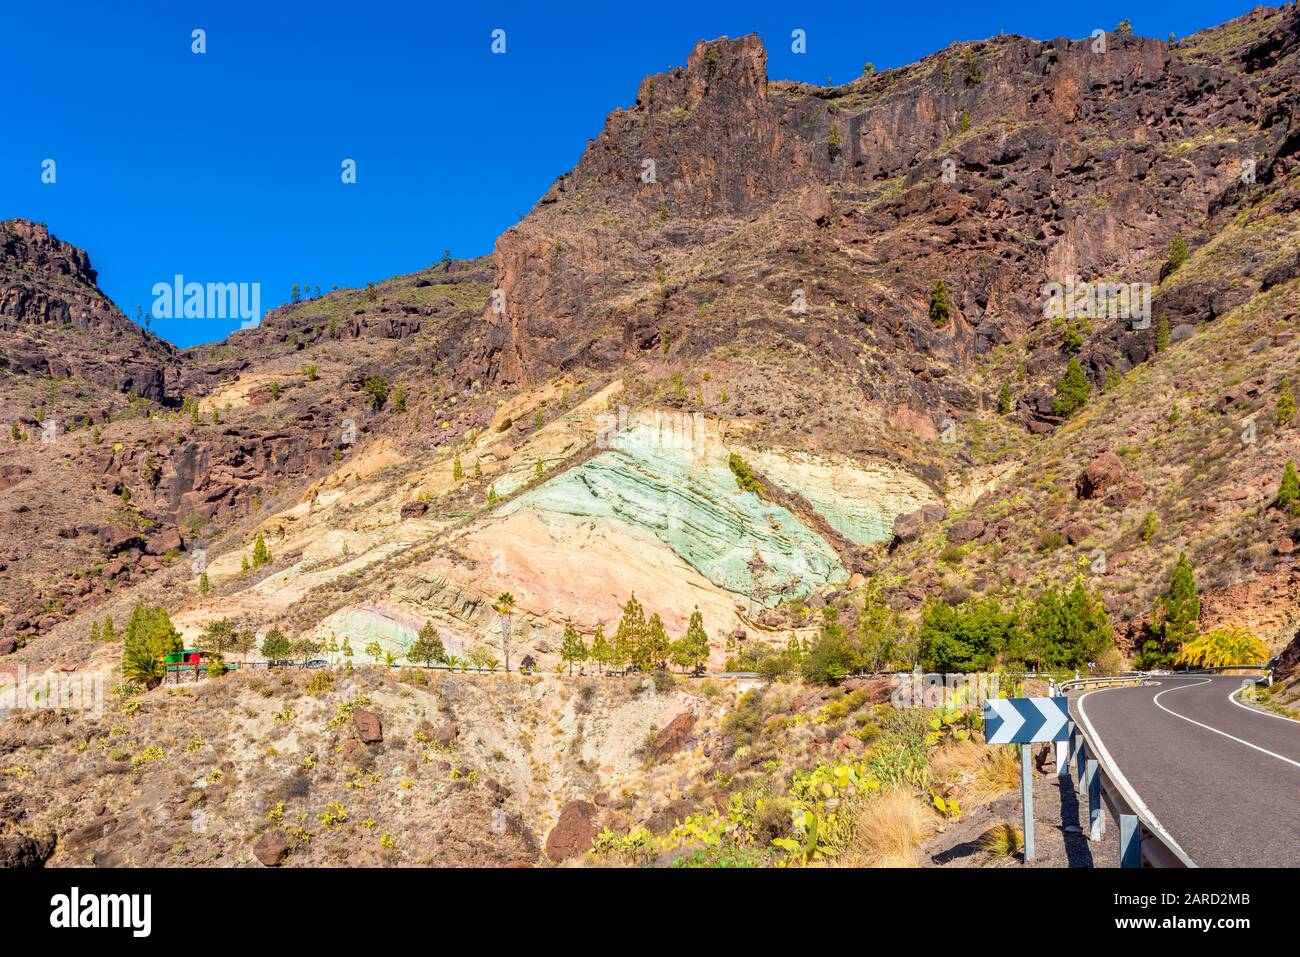 Fuente De Los Azulejos Rock Formation À Gran Canaria, Îles Canaries, Espagne. Les roches colorées sont un effet secondaire des éruptions hydromagmatiques. Banque D'Images